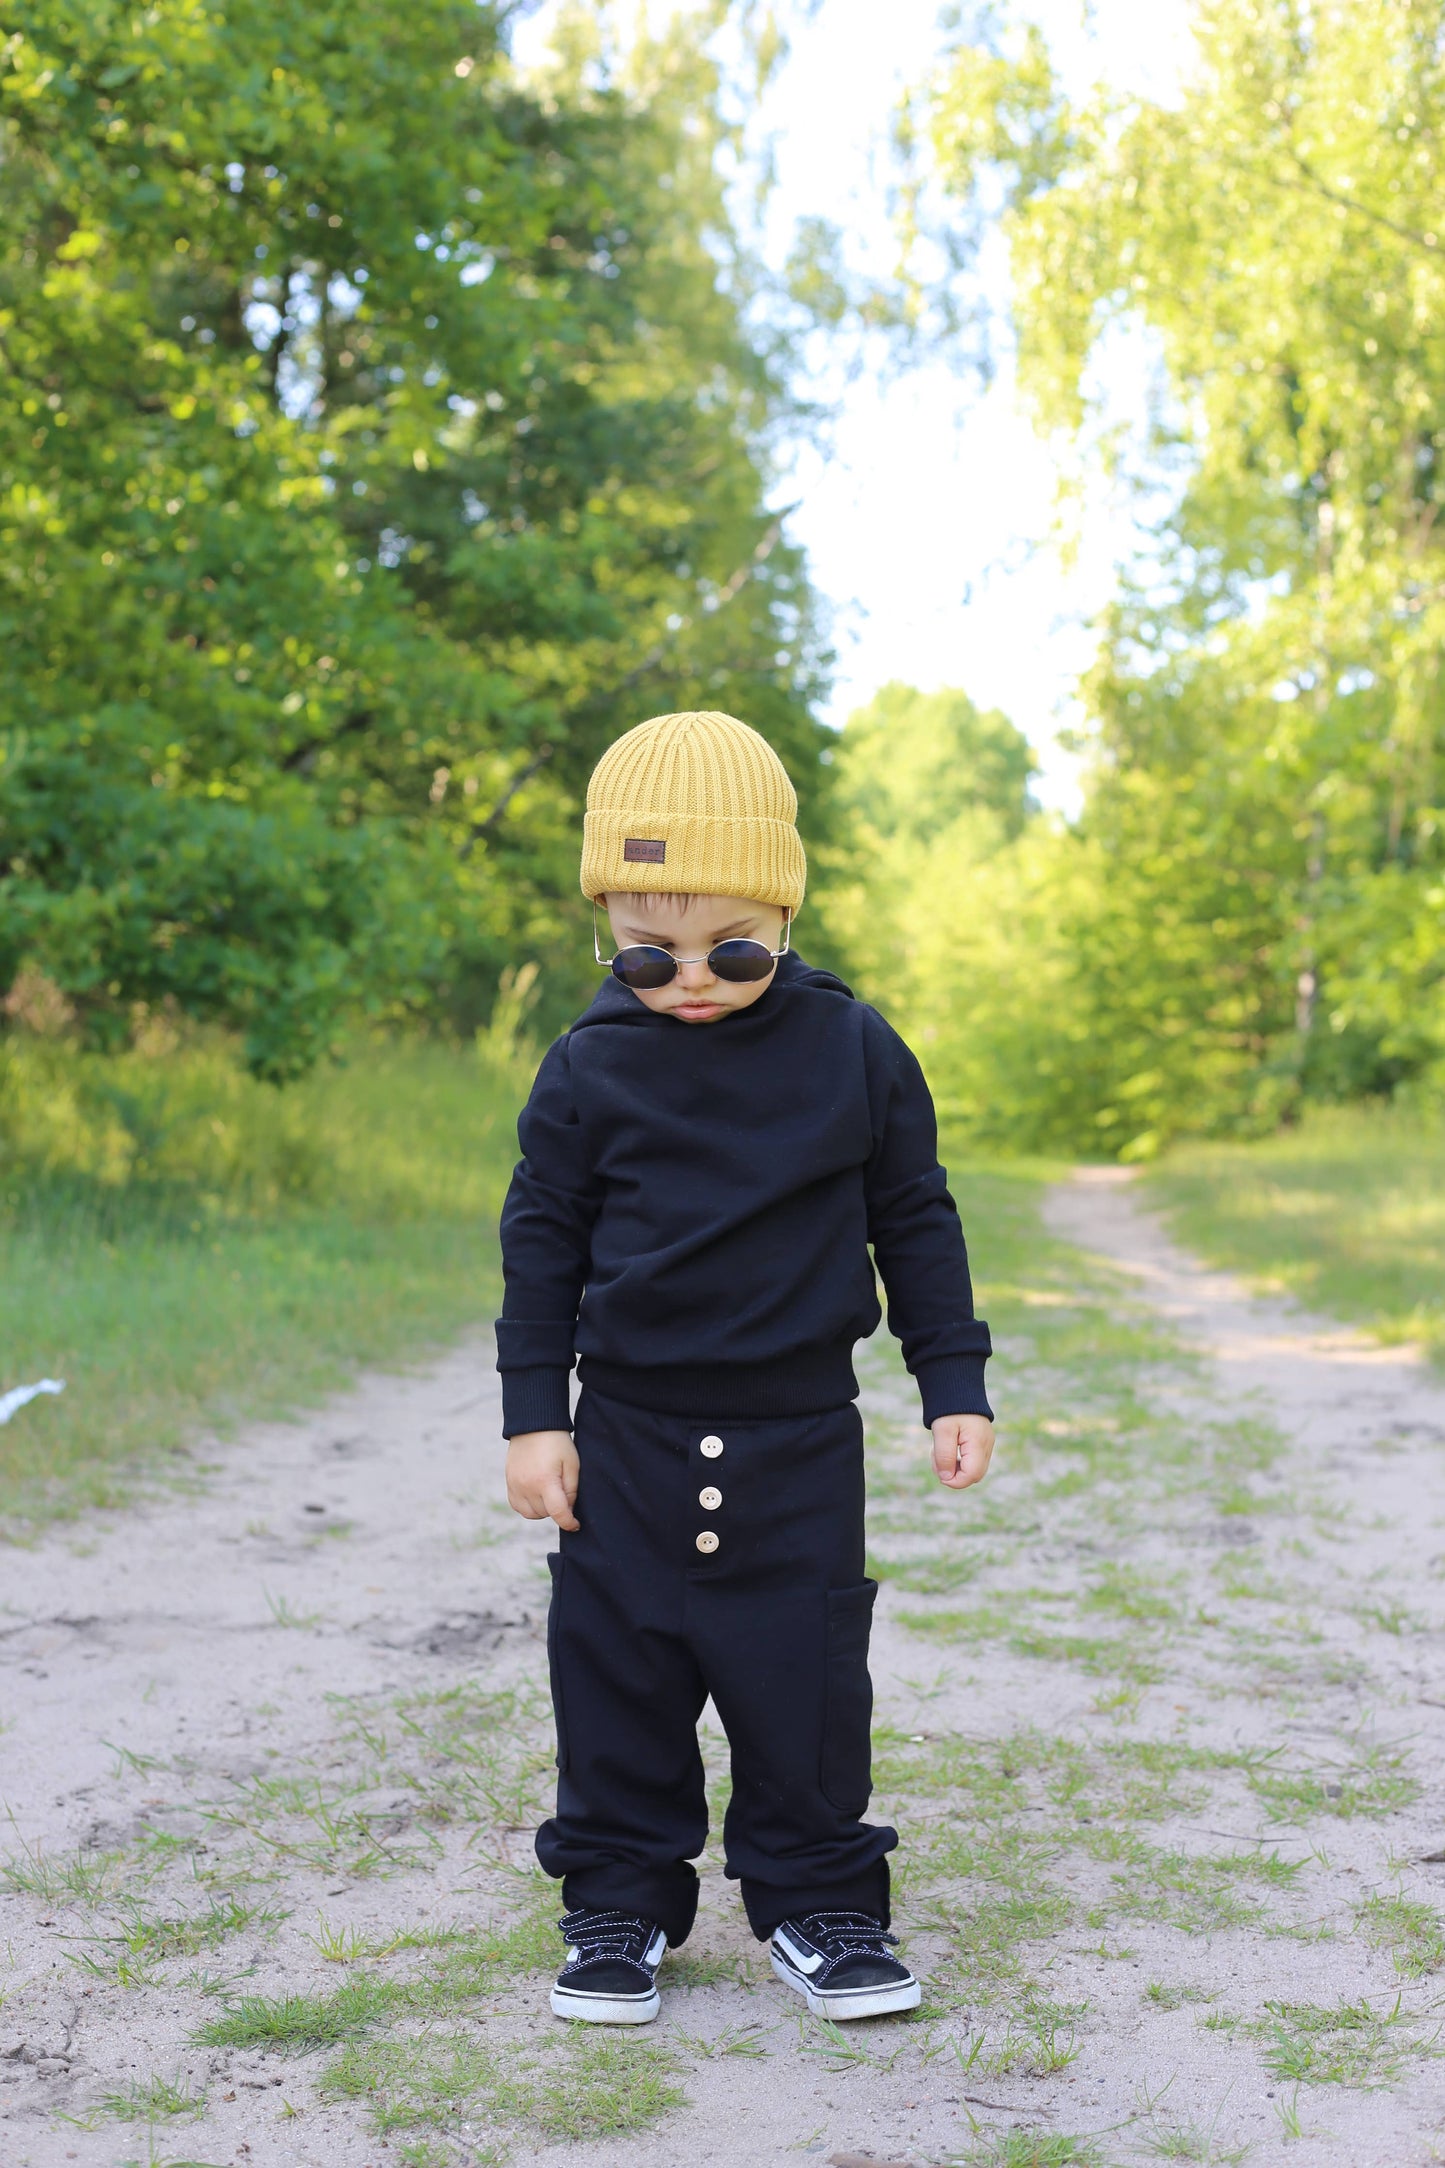 Beanie "Aldo" - Boy Hat Recycled Cotton Mustard